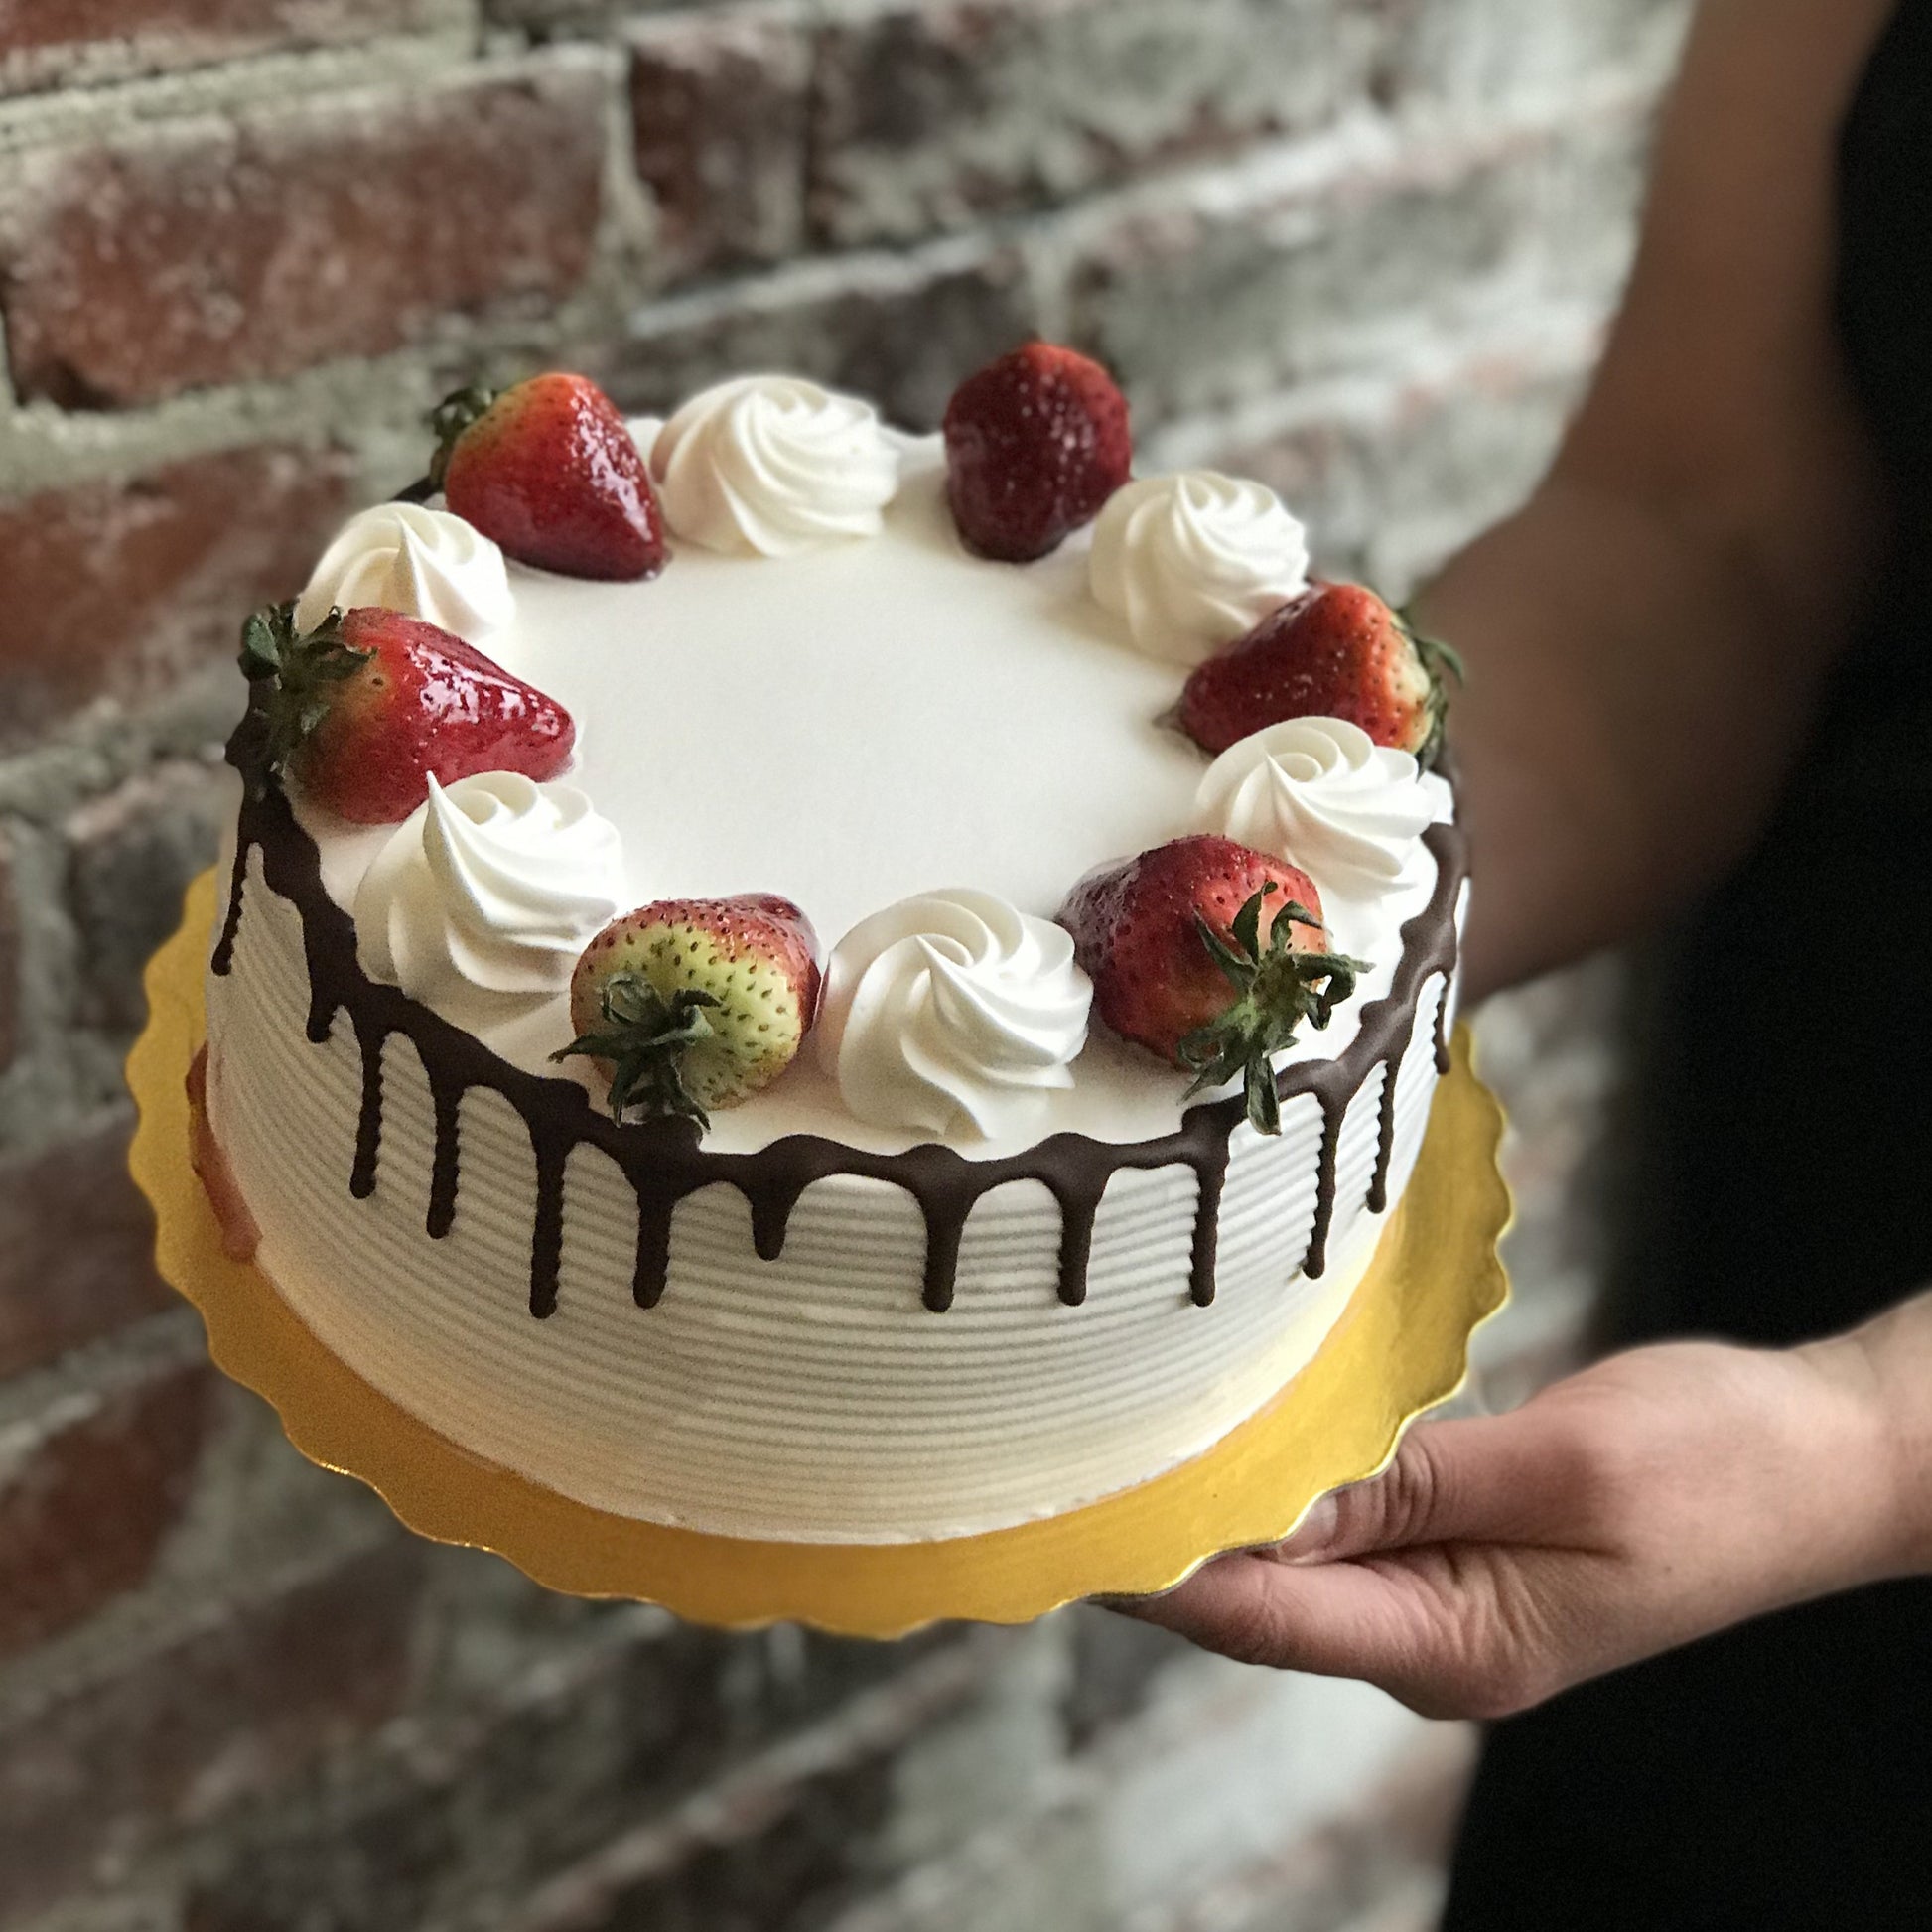 Vanilla cake with chocolate drip and fresh strawberries